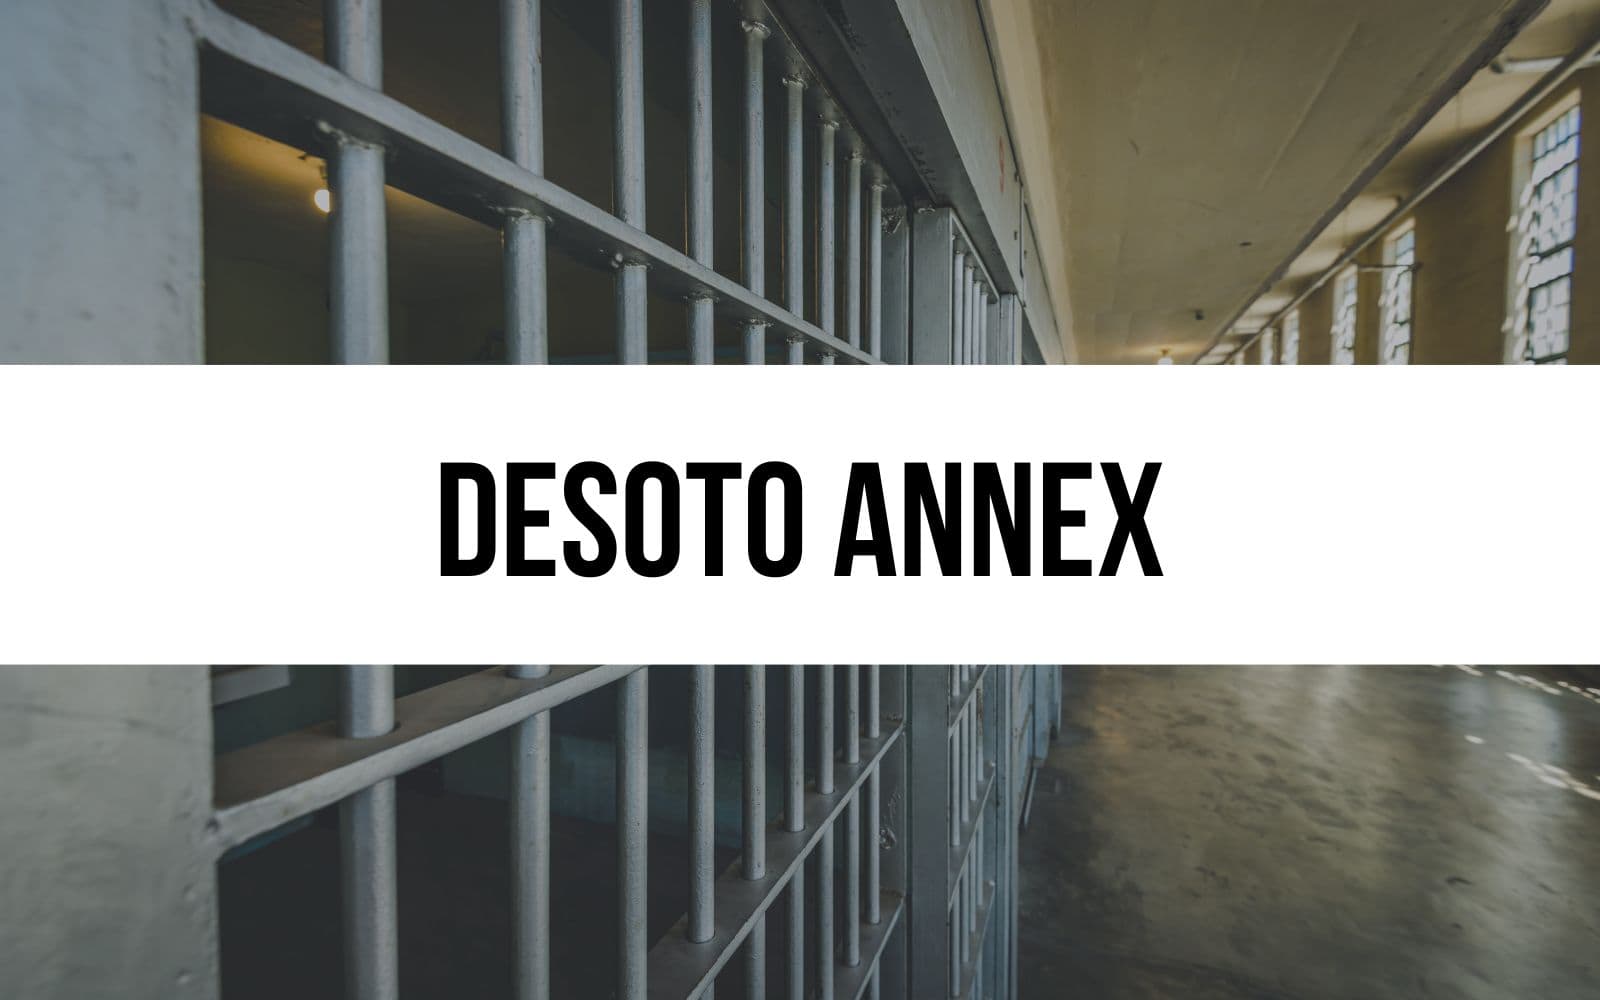 Desoto Annex